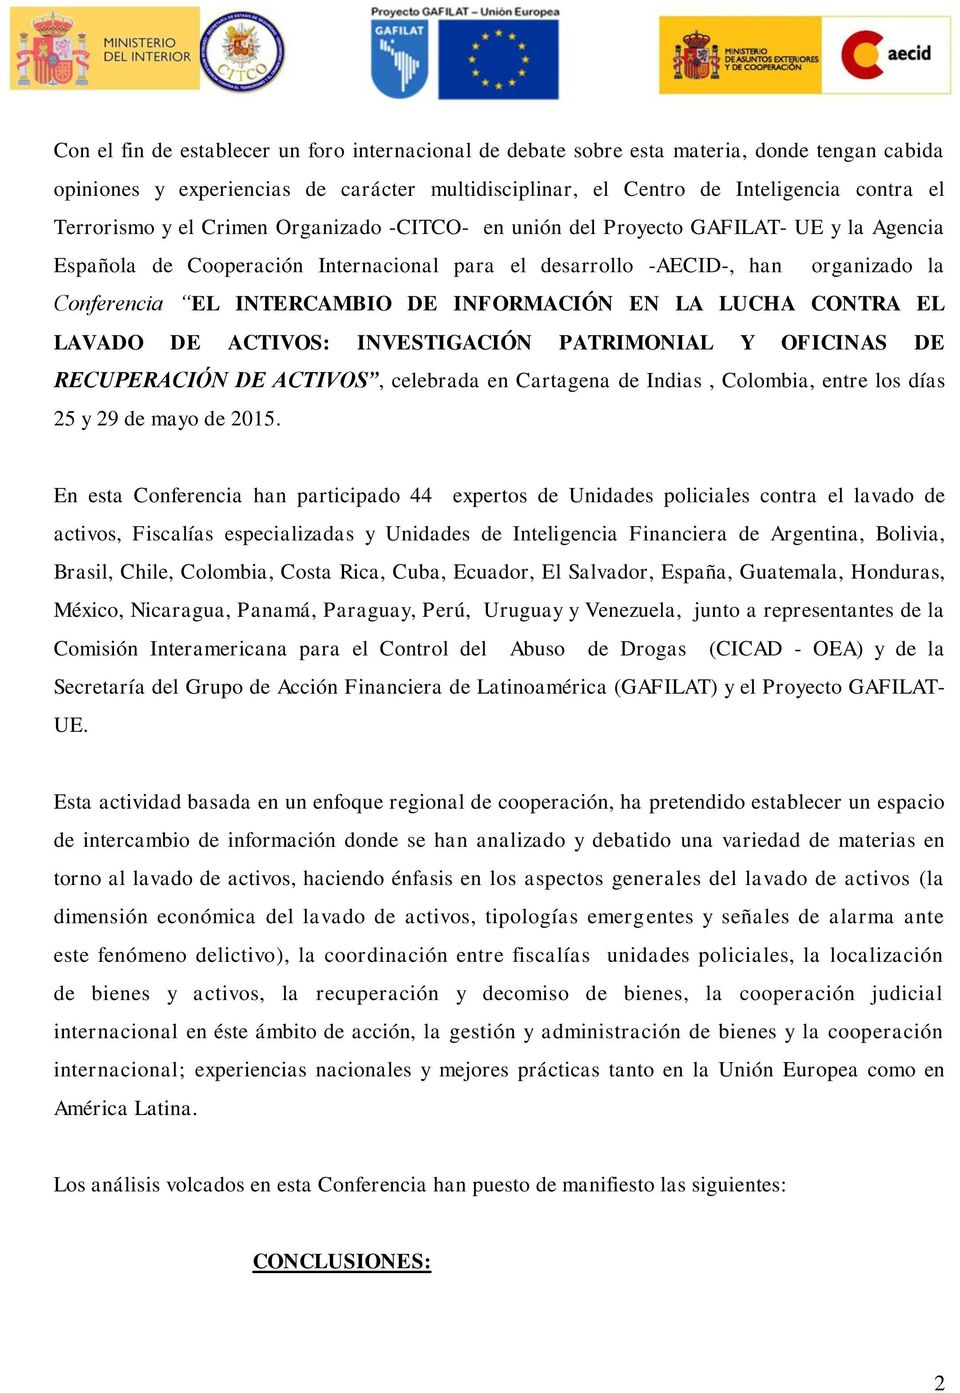 INFORMACIÓN EN LA LUCHA CONTRA EL LAVADO DE ACTIVOS: INVESTIGACIÓN PATRIMONIAL Y OFICINAS DE RECUPERACIÓN DE ACTIVOS, celebrada en Cartagena de Indias, Colombia, entre los días 25 y 29 de mayo de